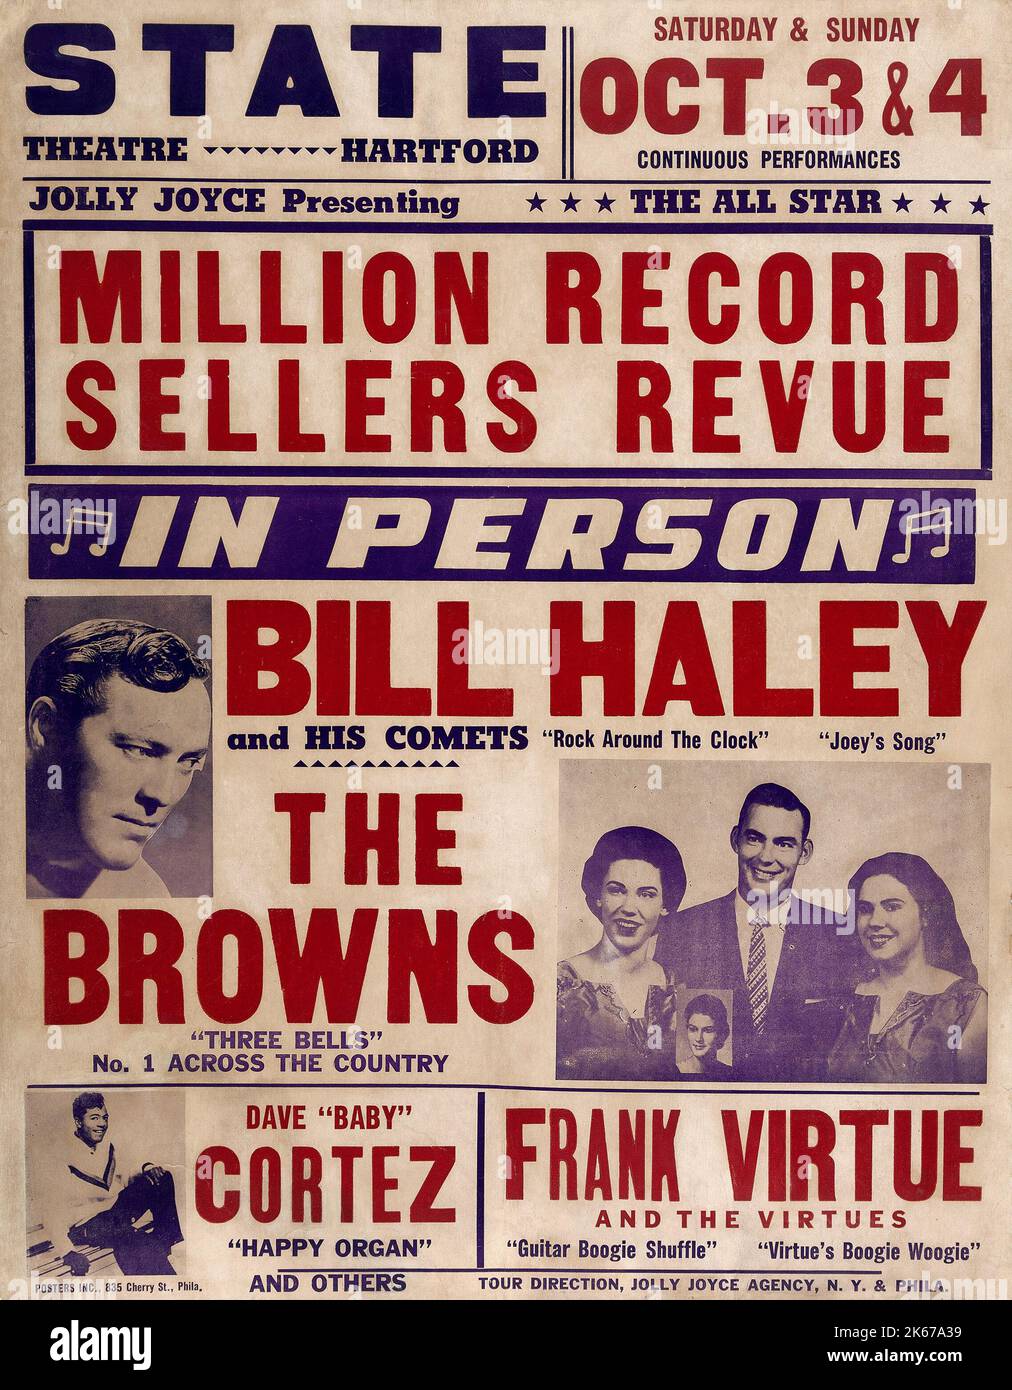 Bill Haley & HIS Comets - million de vendeurs de disques revue - State Theatre concert Poster (1959) Banque D'Images